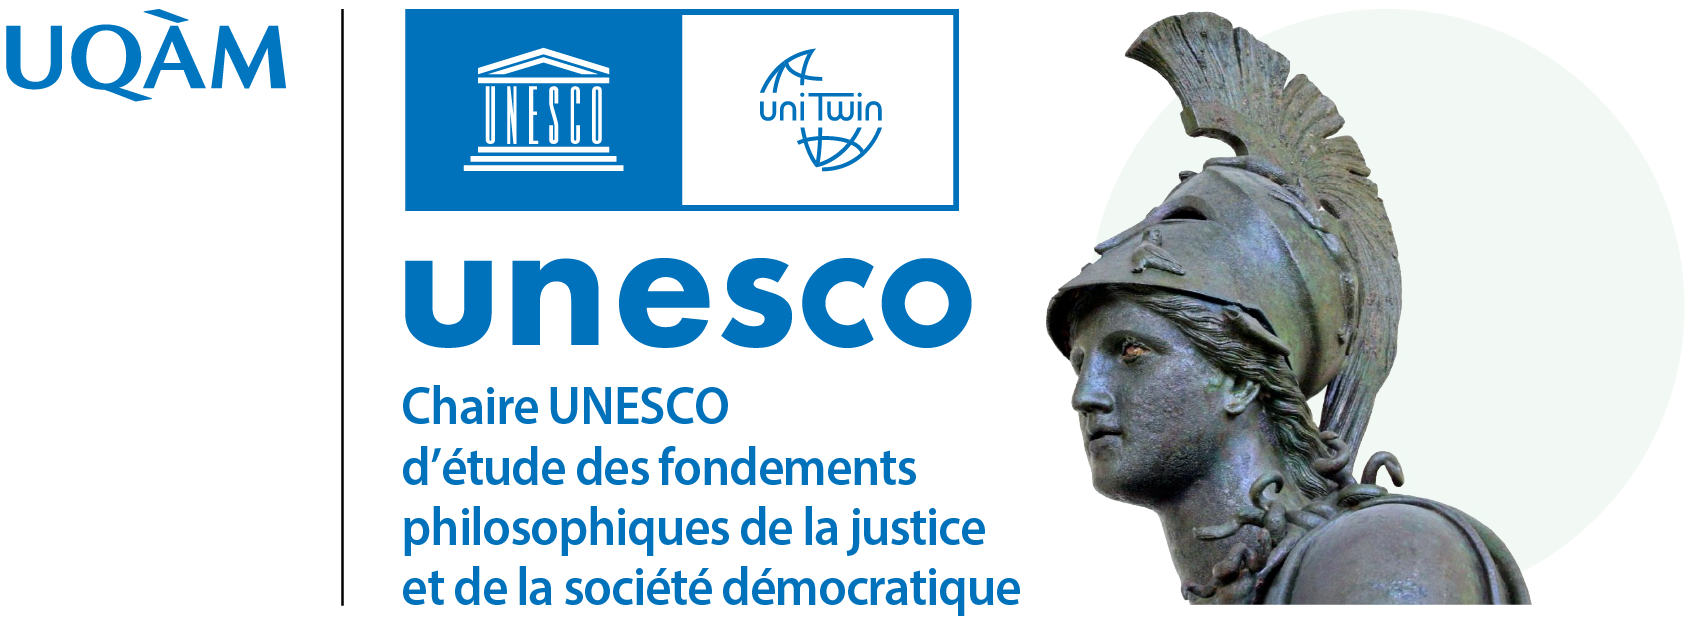 Chaire UNESCO d’étude des fondements philosophique de la justice et de la société démocratique | UQAM